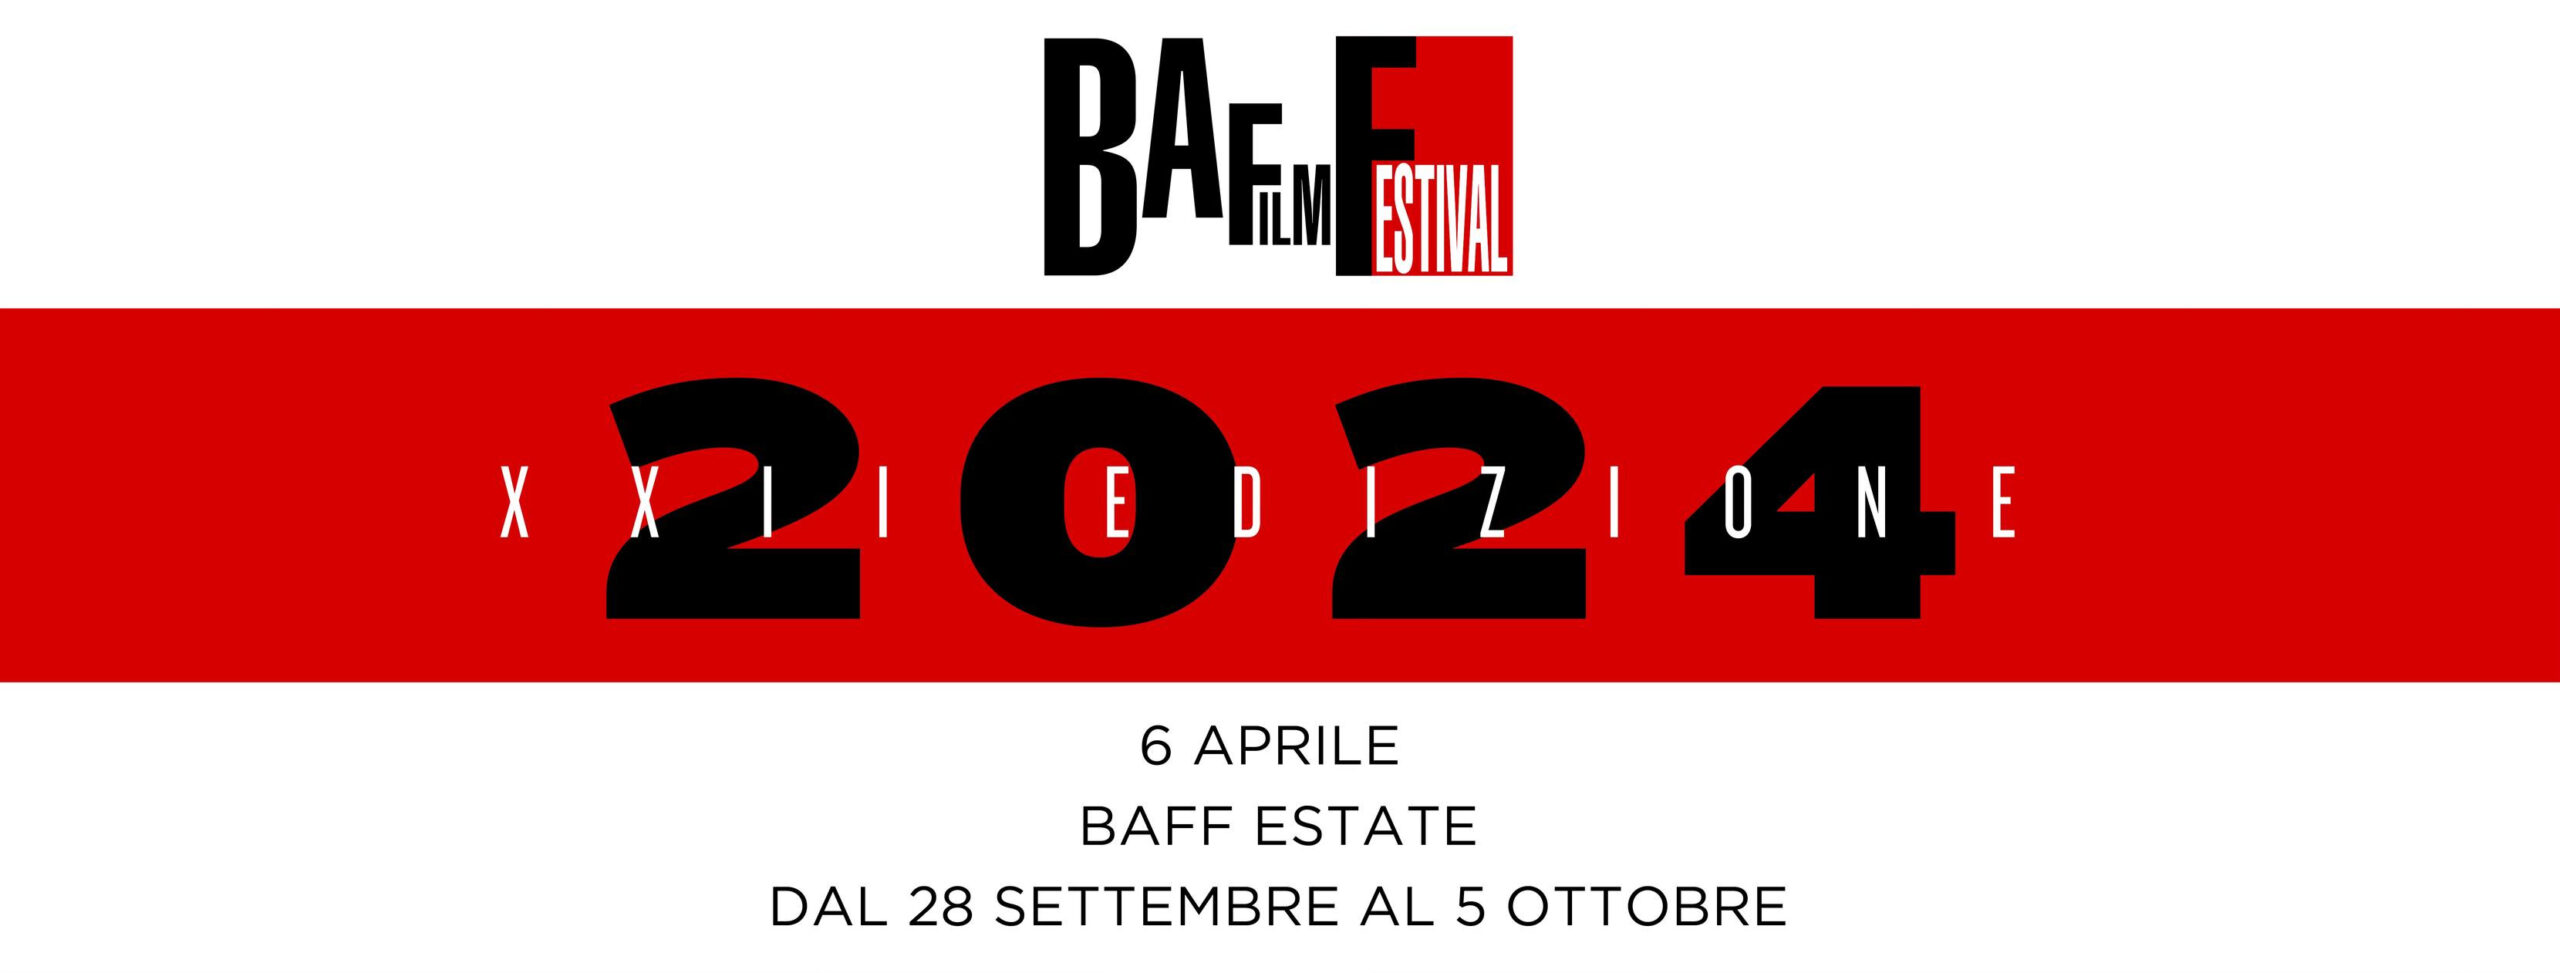 BAFF – B.A Film Festival cresce nel 2024 con una tripla programmazione in primavera, estate e autunno